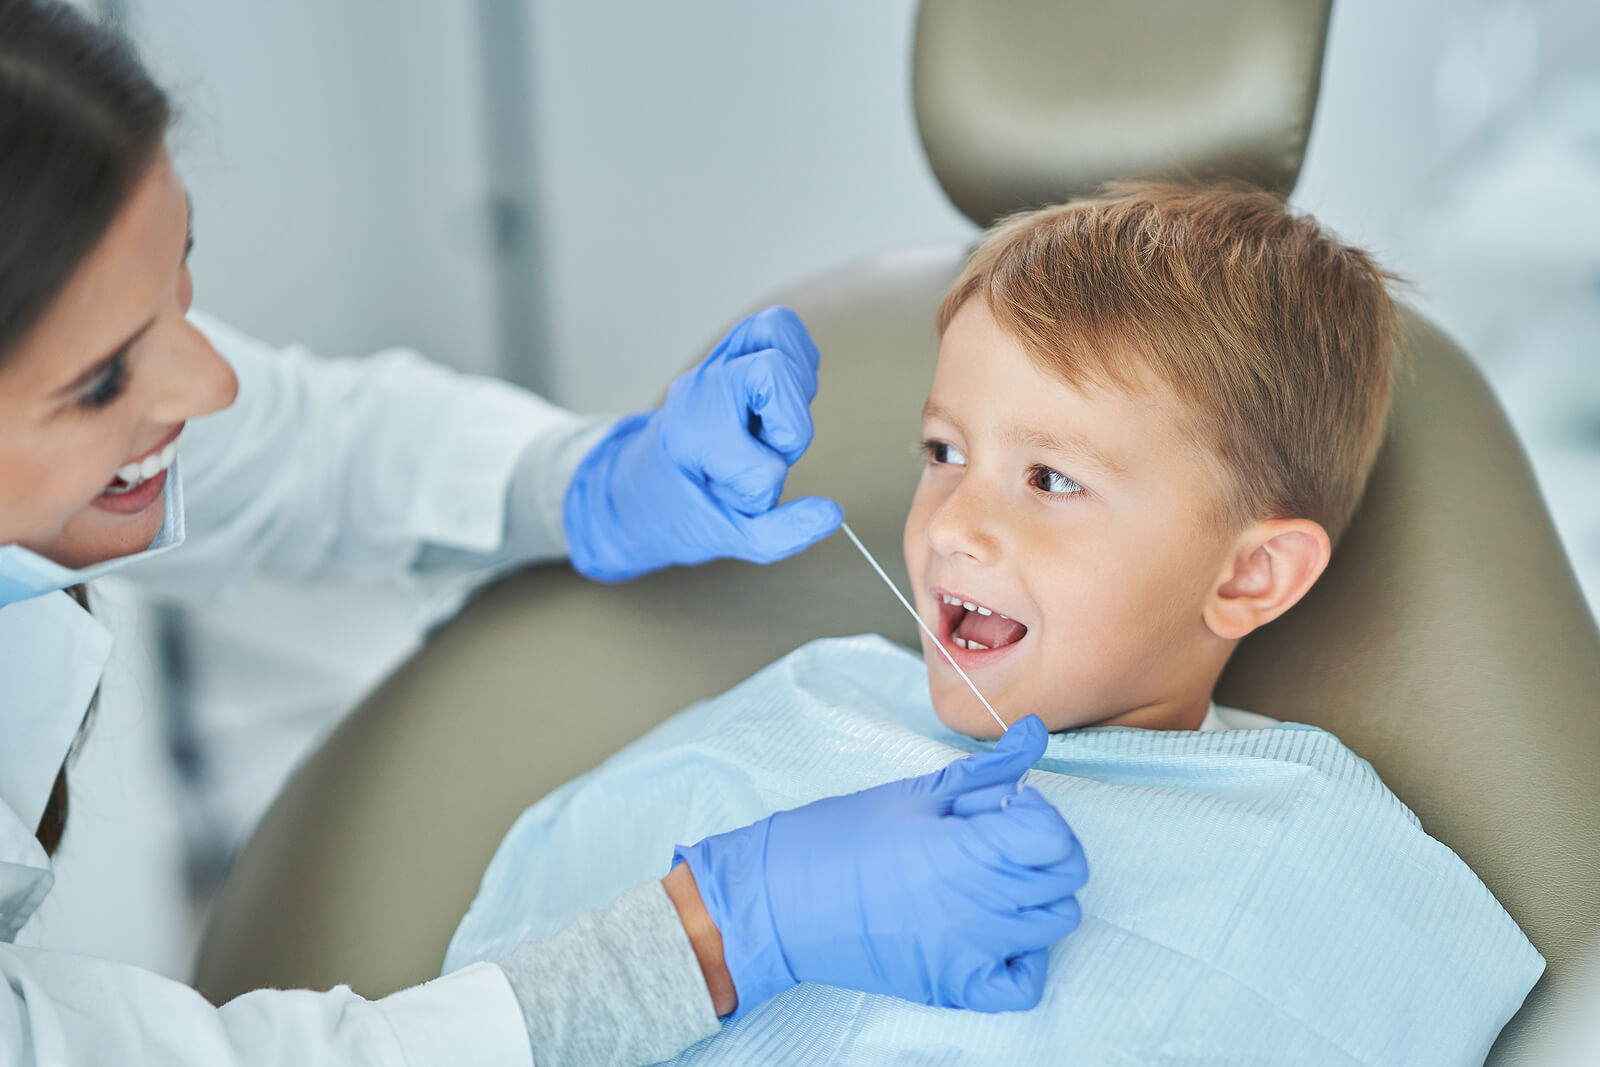 ¿Los niños pueden usar hilo dental?